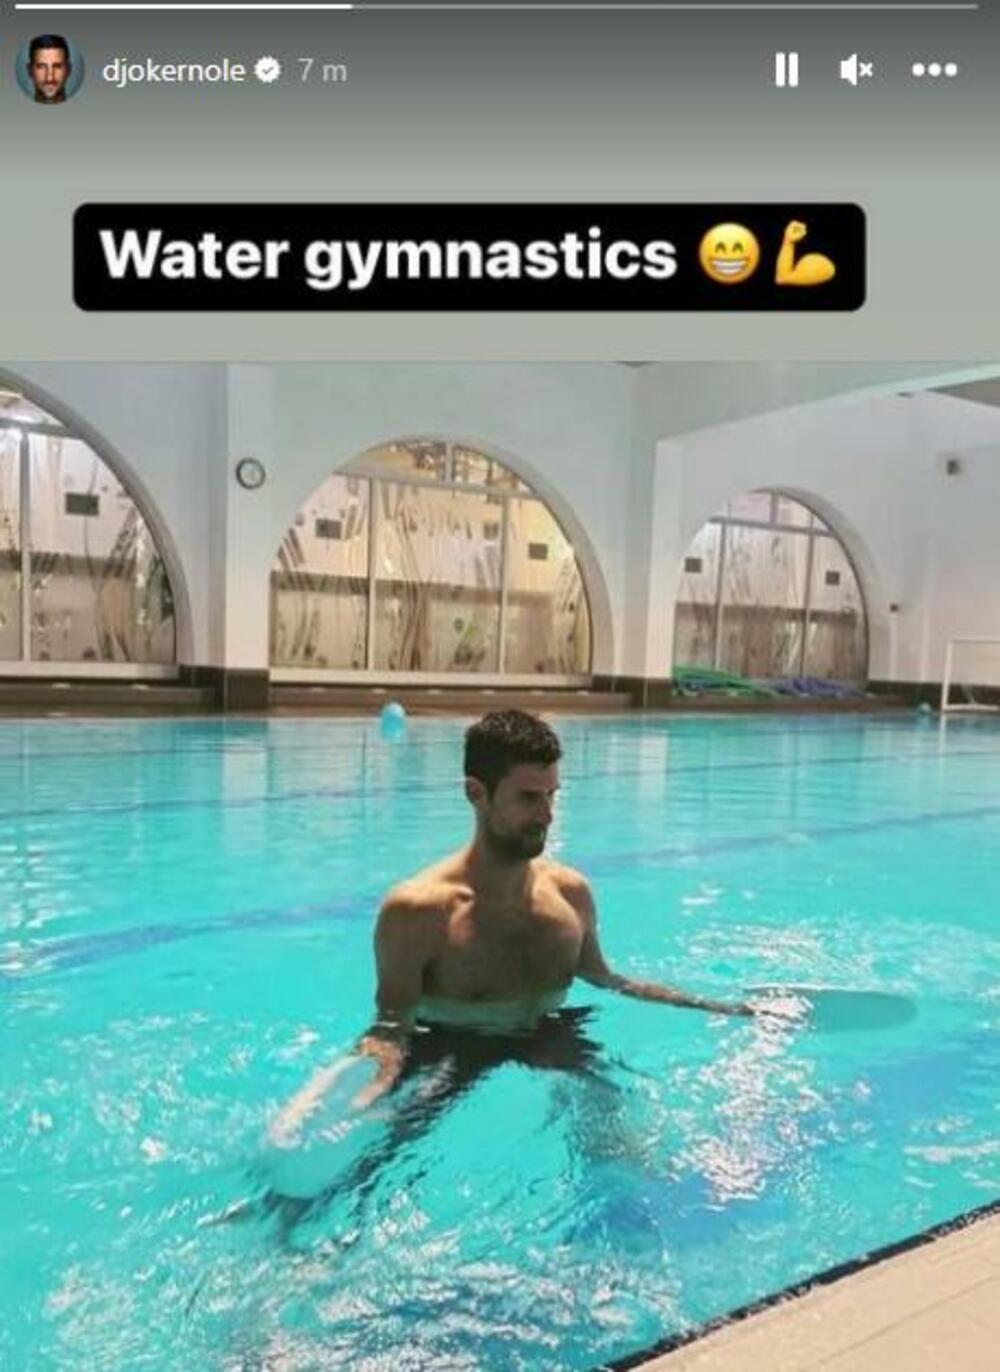 Đoković vežba u bazenu